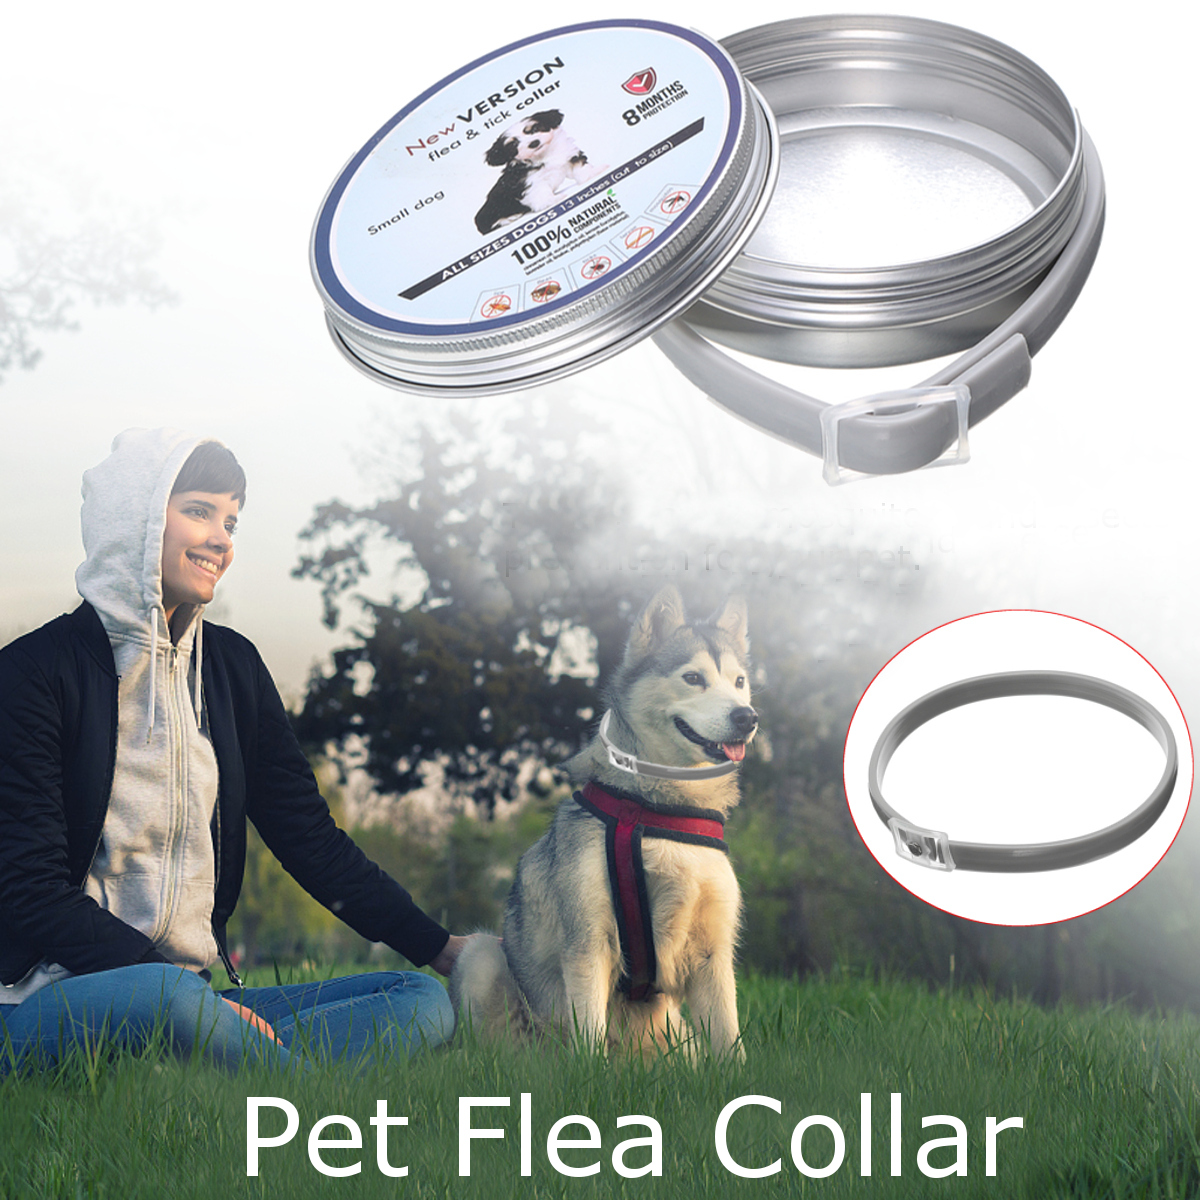 Mosquitoes-Neck-Collar-Pet-Cat-Dog-Protecter-Adjustable-Waterproof-Lightweight-1476906